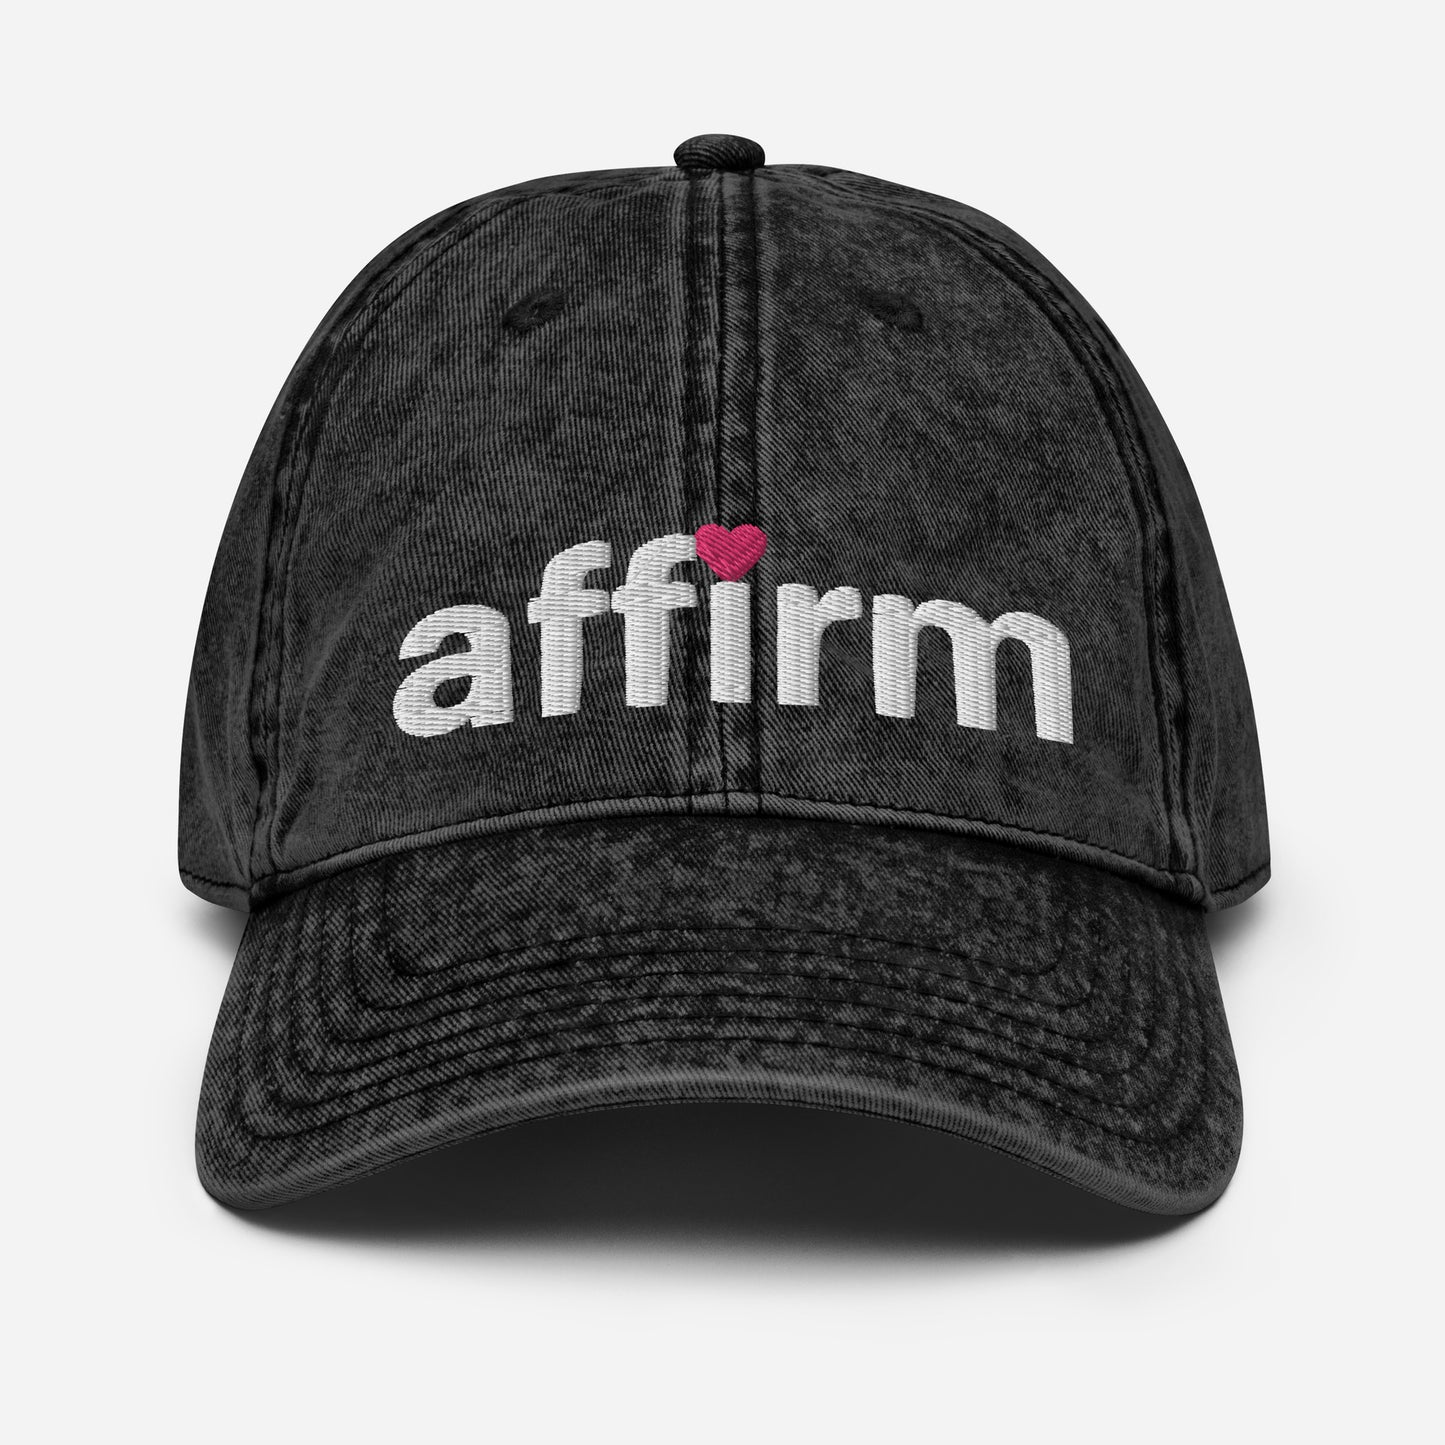 the classic affirm cap